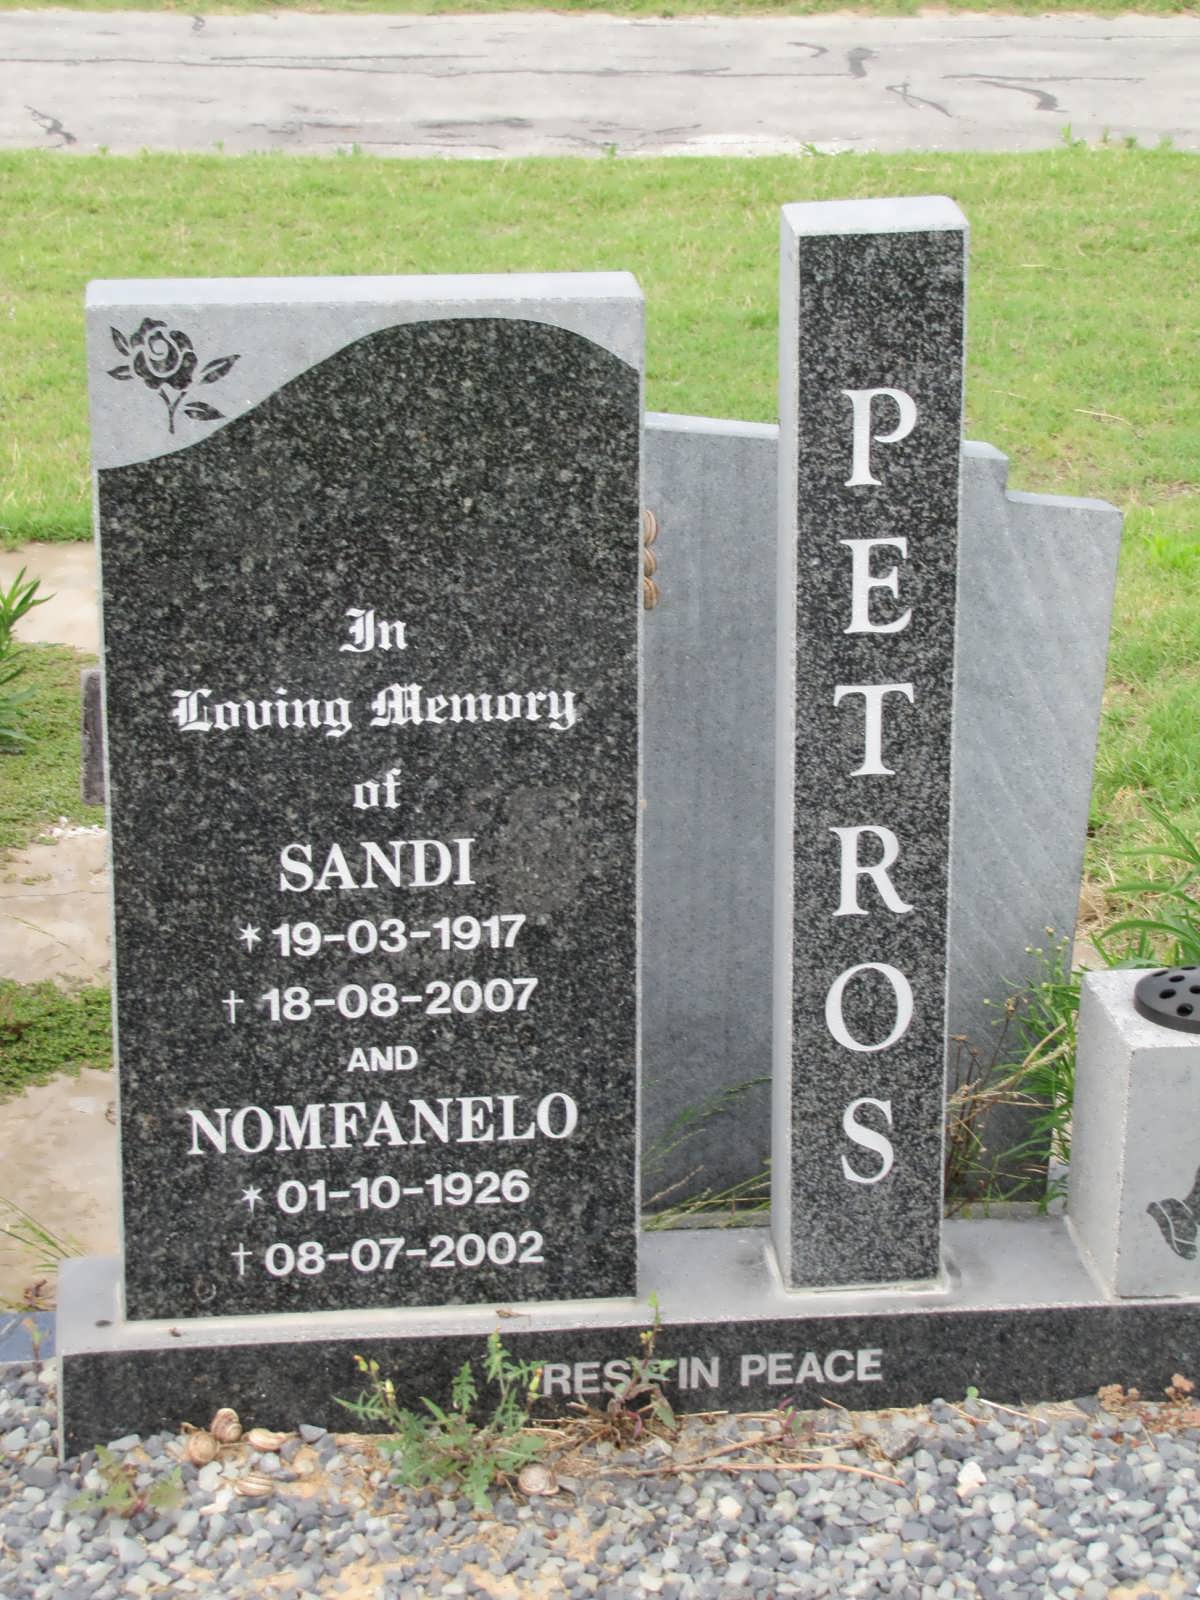 PETROS Sandi 1917-2007 & Nomfanelo 1926-2002